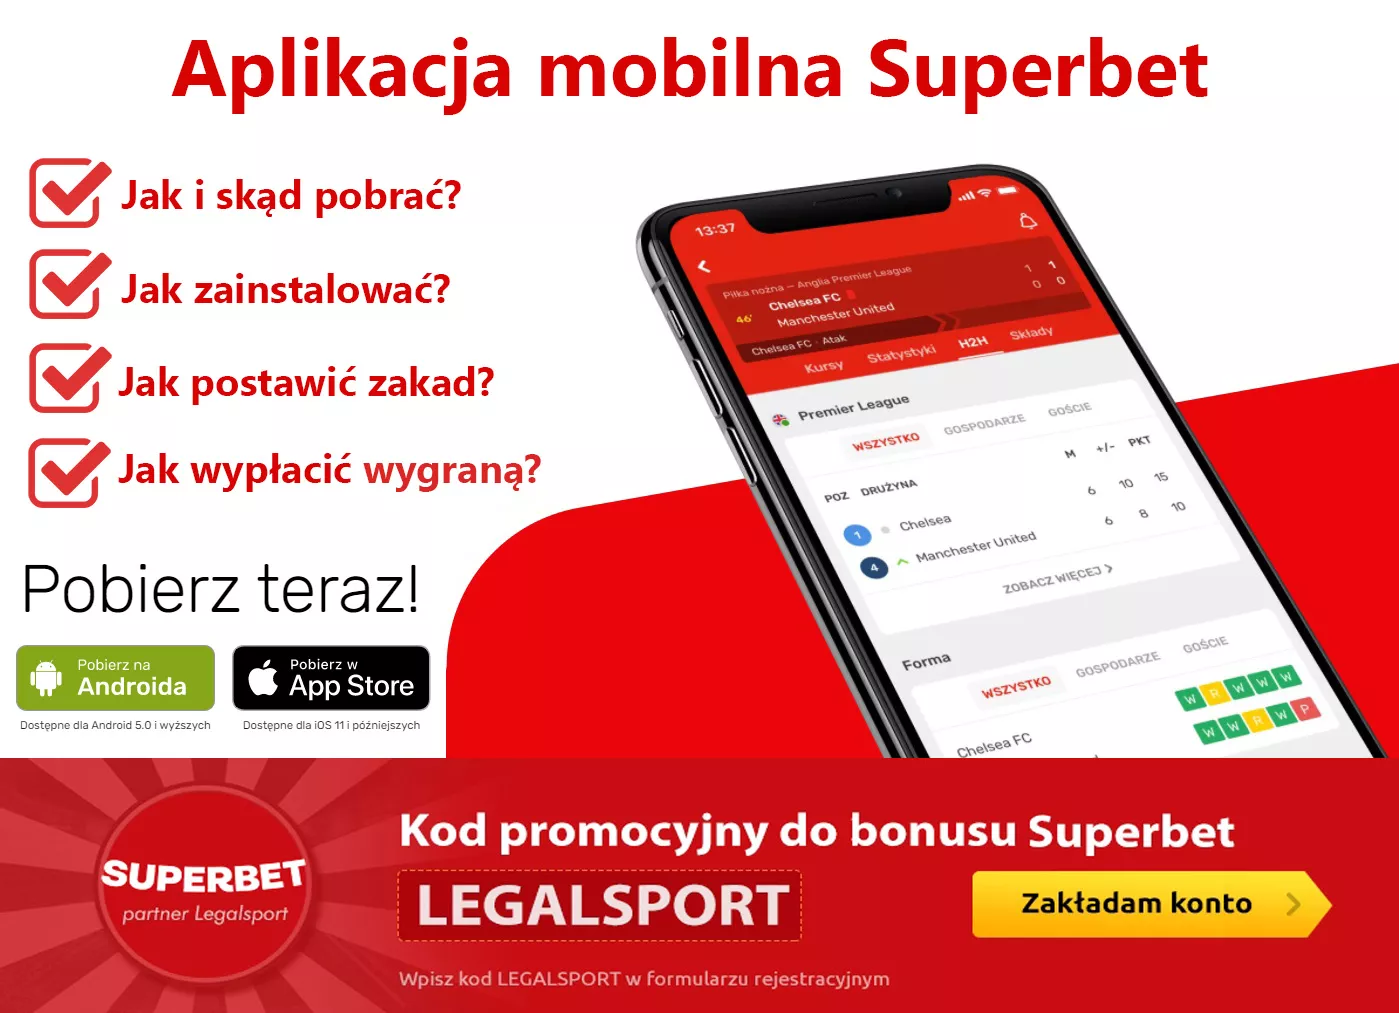 Zdjęcie główne do artykułu o aplikacji mobilnej na telefon czy tablet od Superbet Zakłady Bukmacherskie